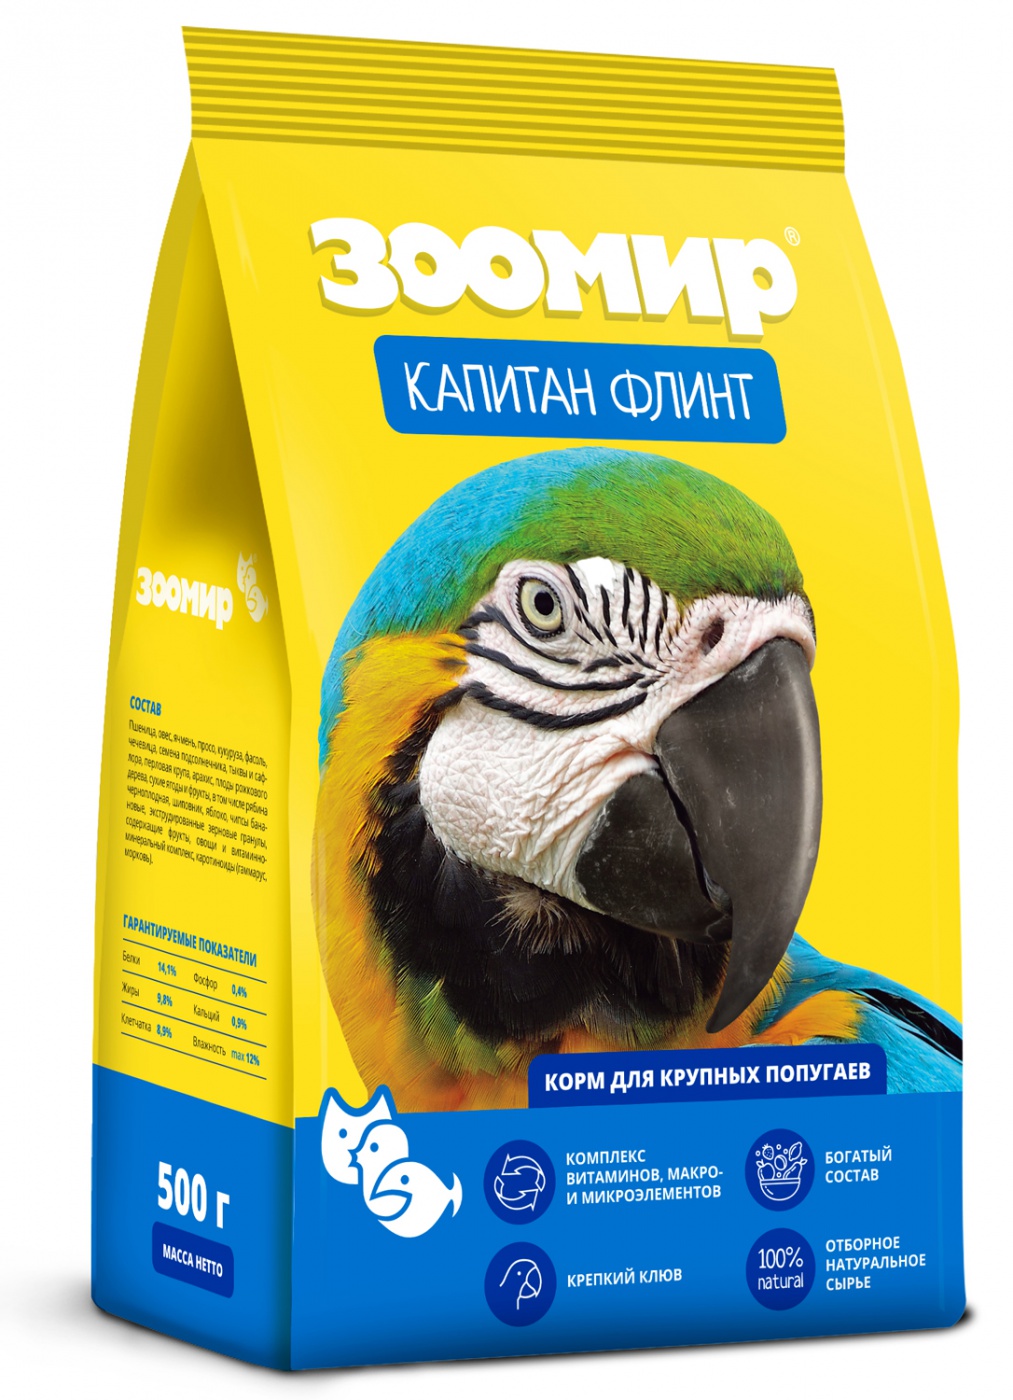 ЗООМИР "Капитан Флинт" - корм для крупных попугаев 500 г фото, цены, купить